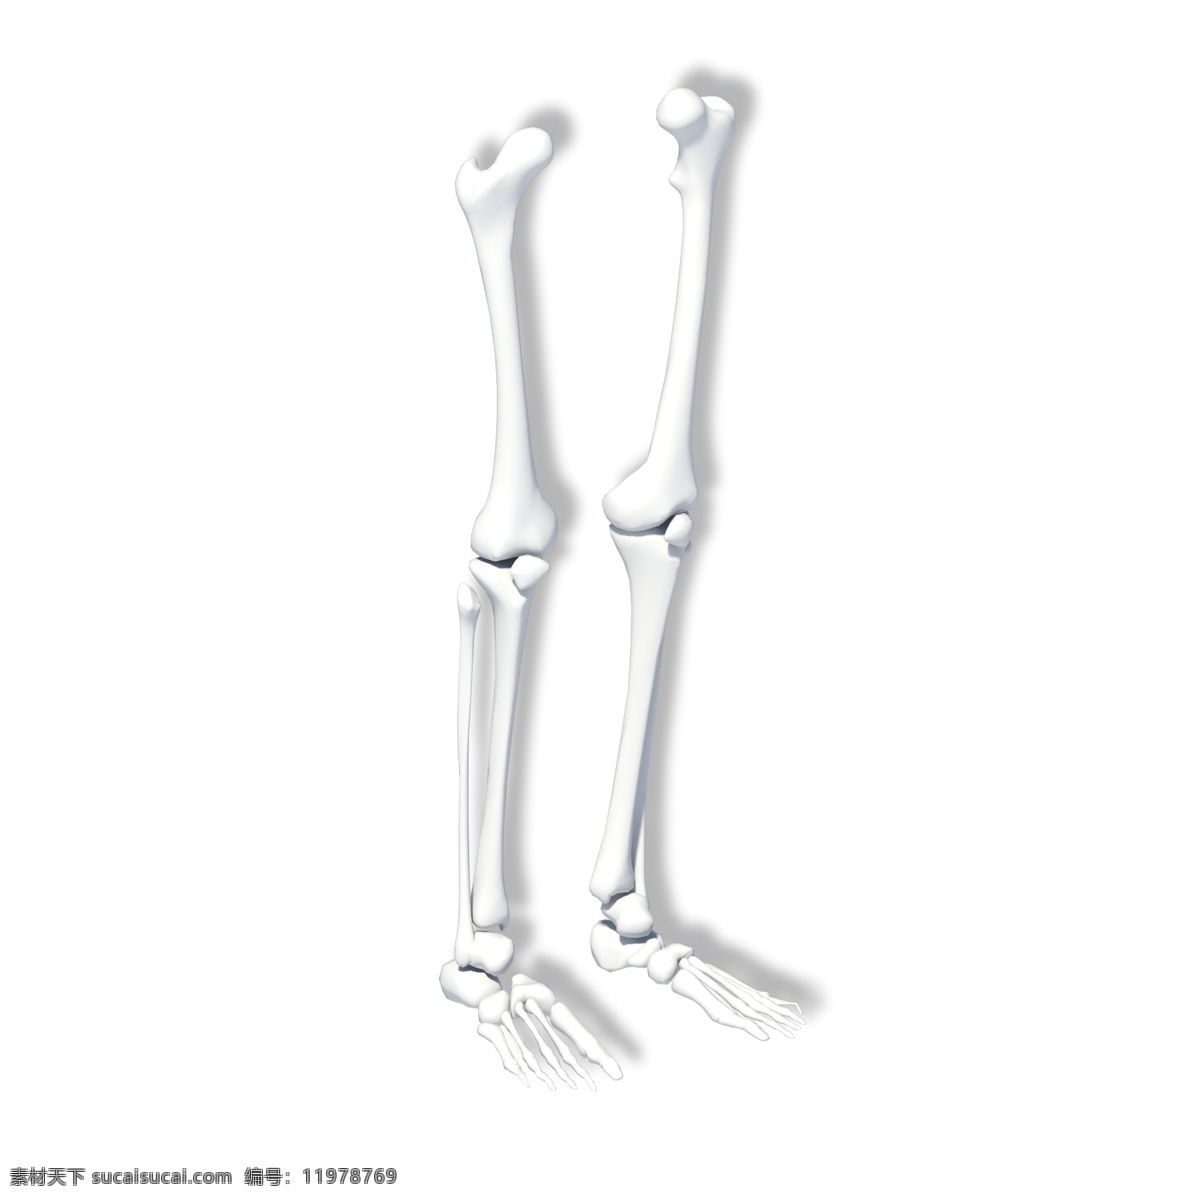 人体 下肢 骨骼 模型 腿骨 骷髅 医学